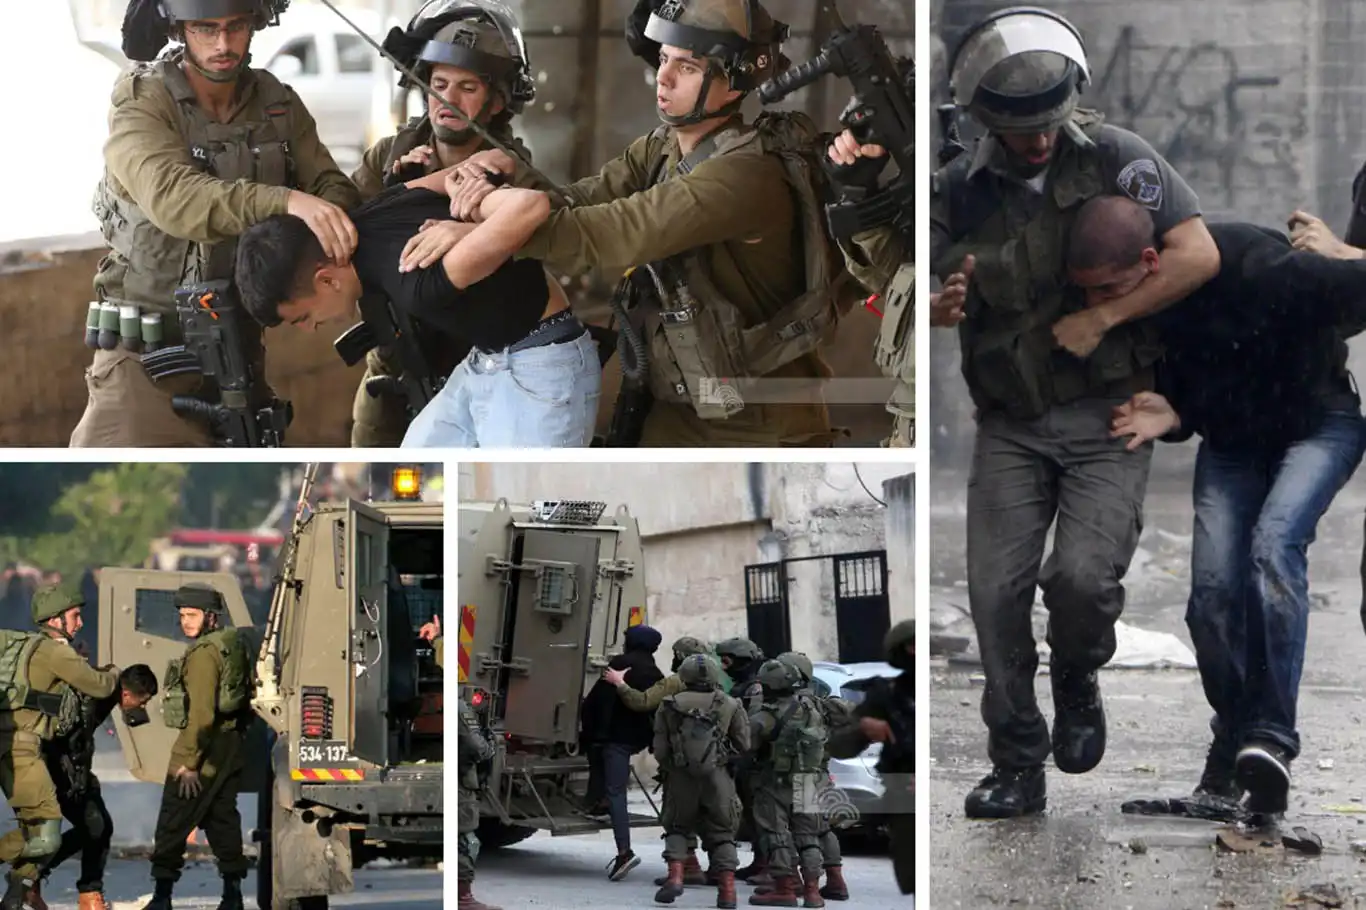 Siyonist işgal rejimi 35 Filistinliyi daha alıkoydu